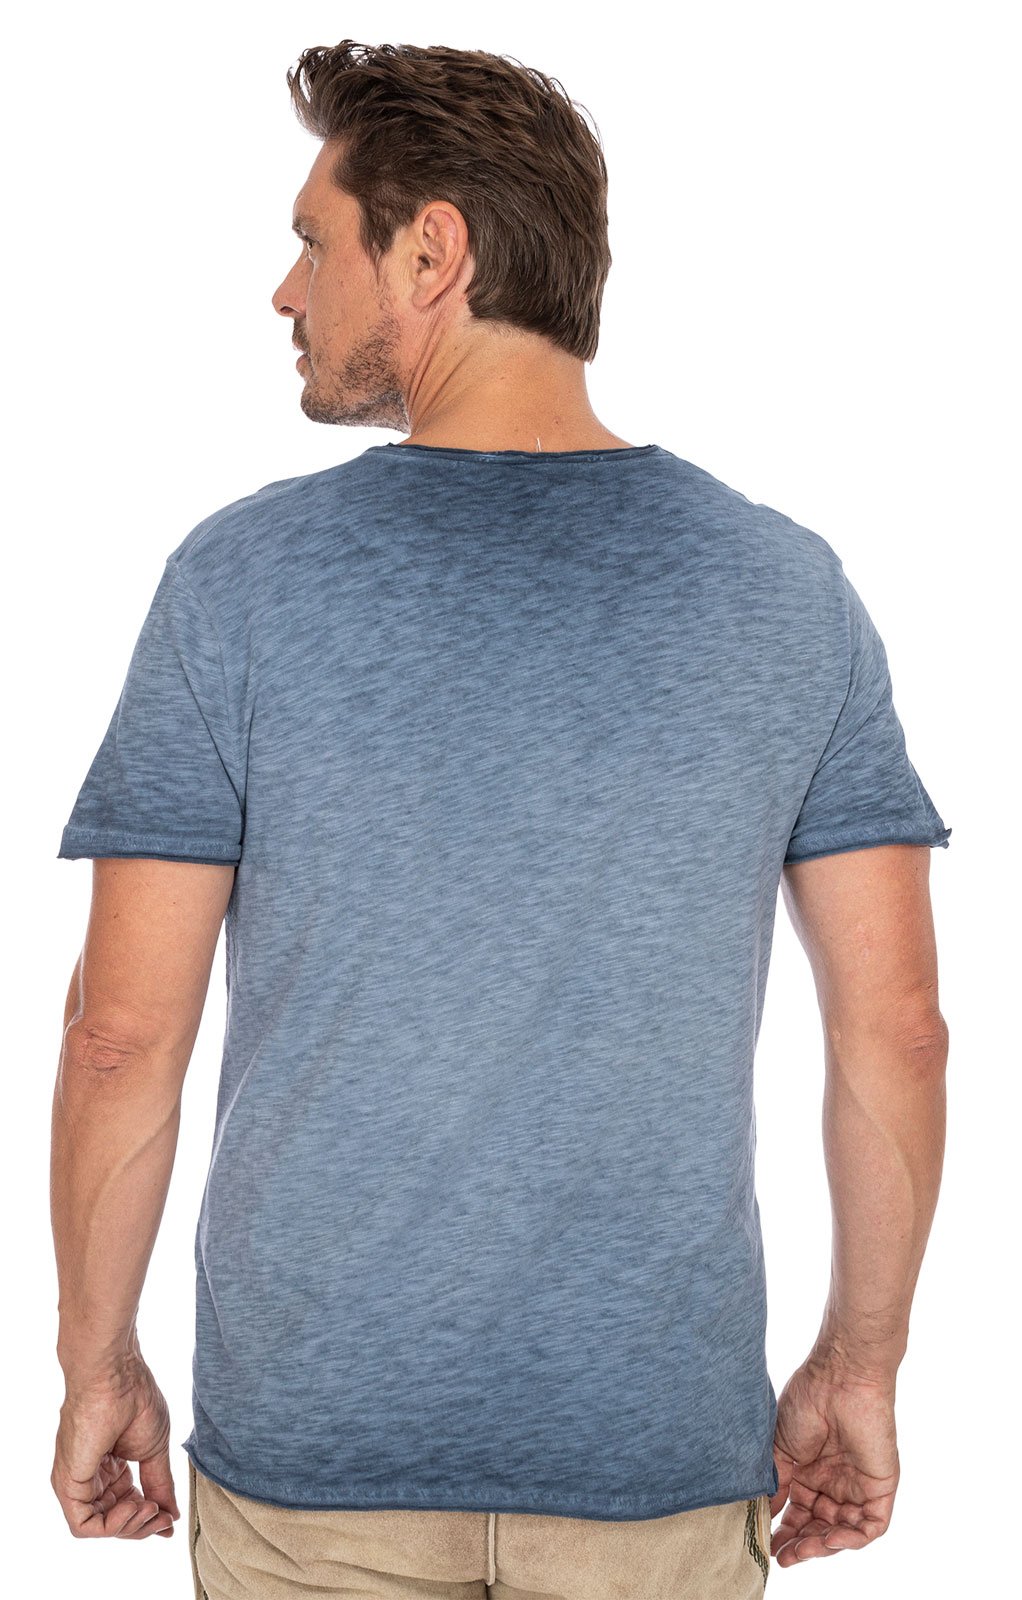 weitere Bilder von Trachten T-Shirt G16 - LEOPOLD blau